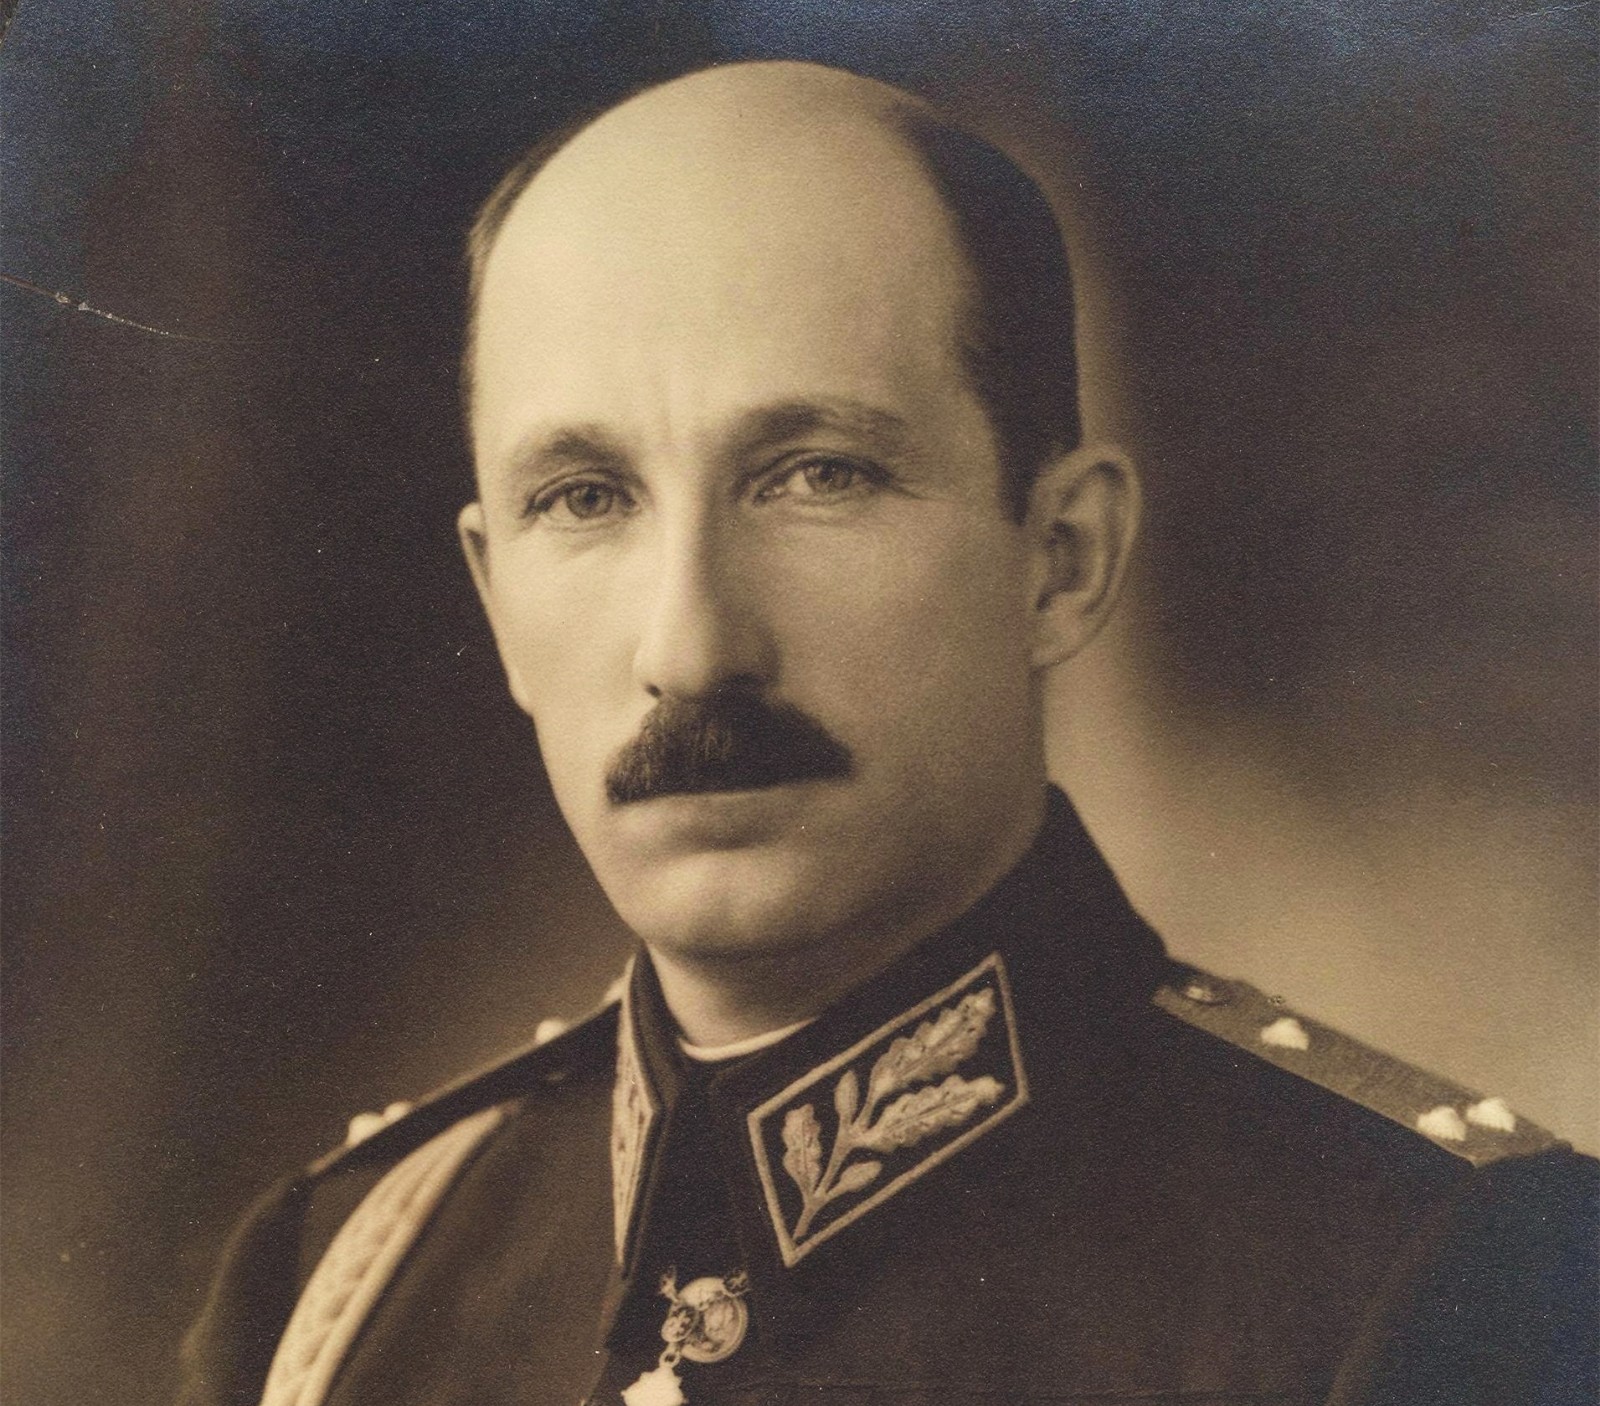 沙皇鲍里斯三世于1943年去世,6岁的西美昂二世得以继承皇位,成为了